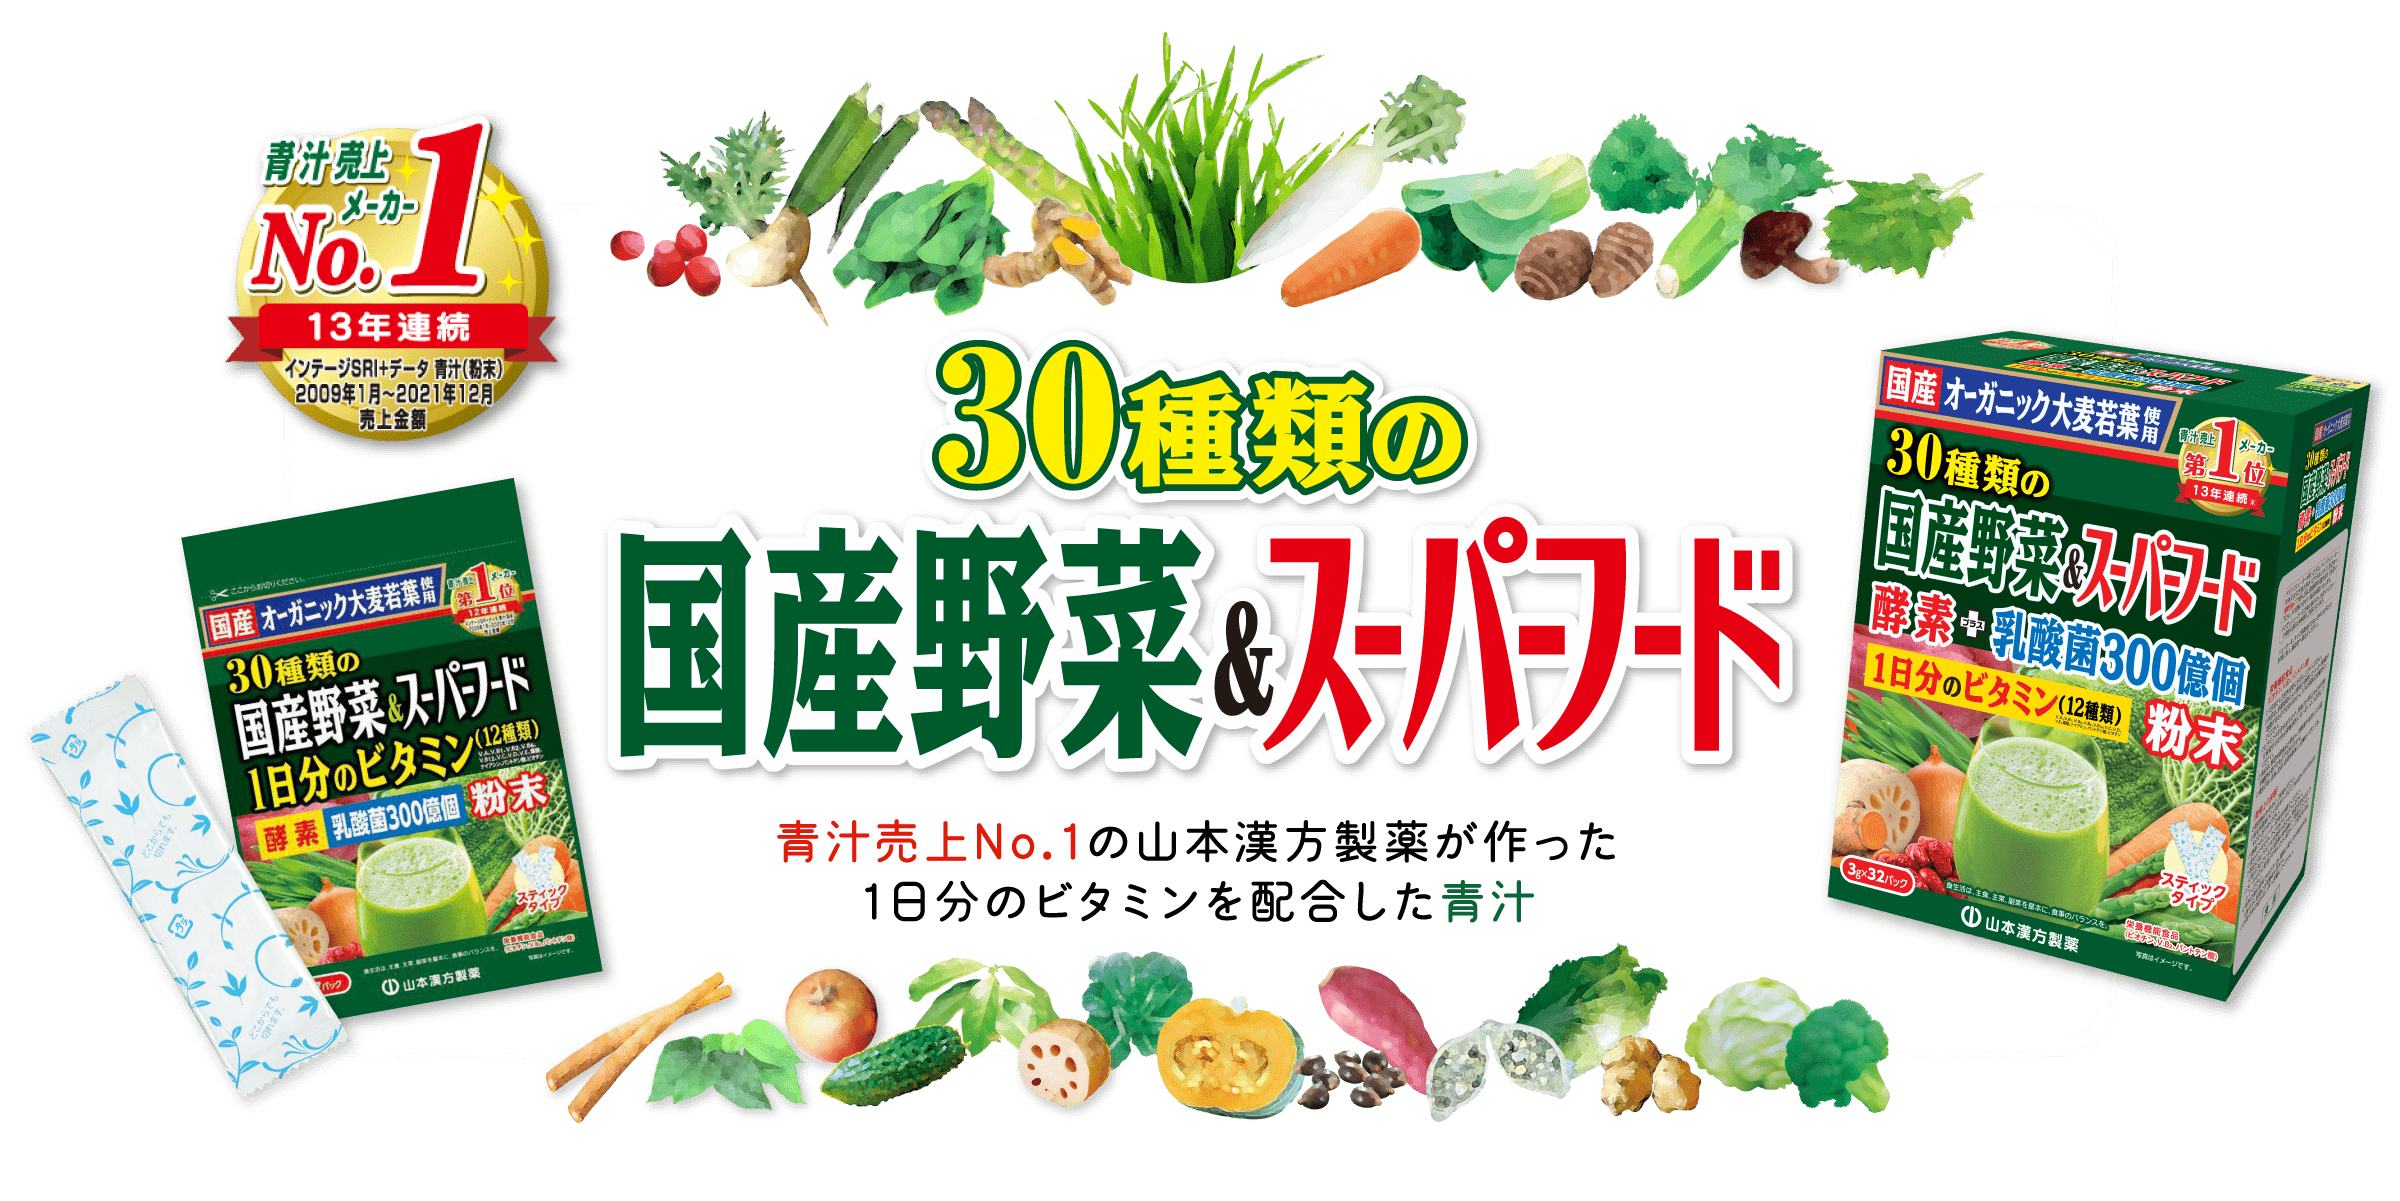 「30種類の国産野菜&スーパーフード」青汁売上No.1の山本漢方製薬が作った 1日分のビタミンを配合した青汁